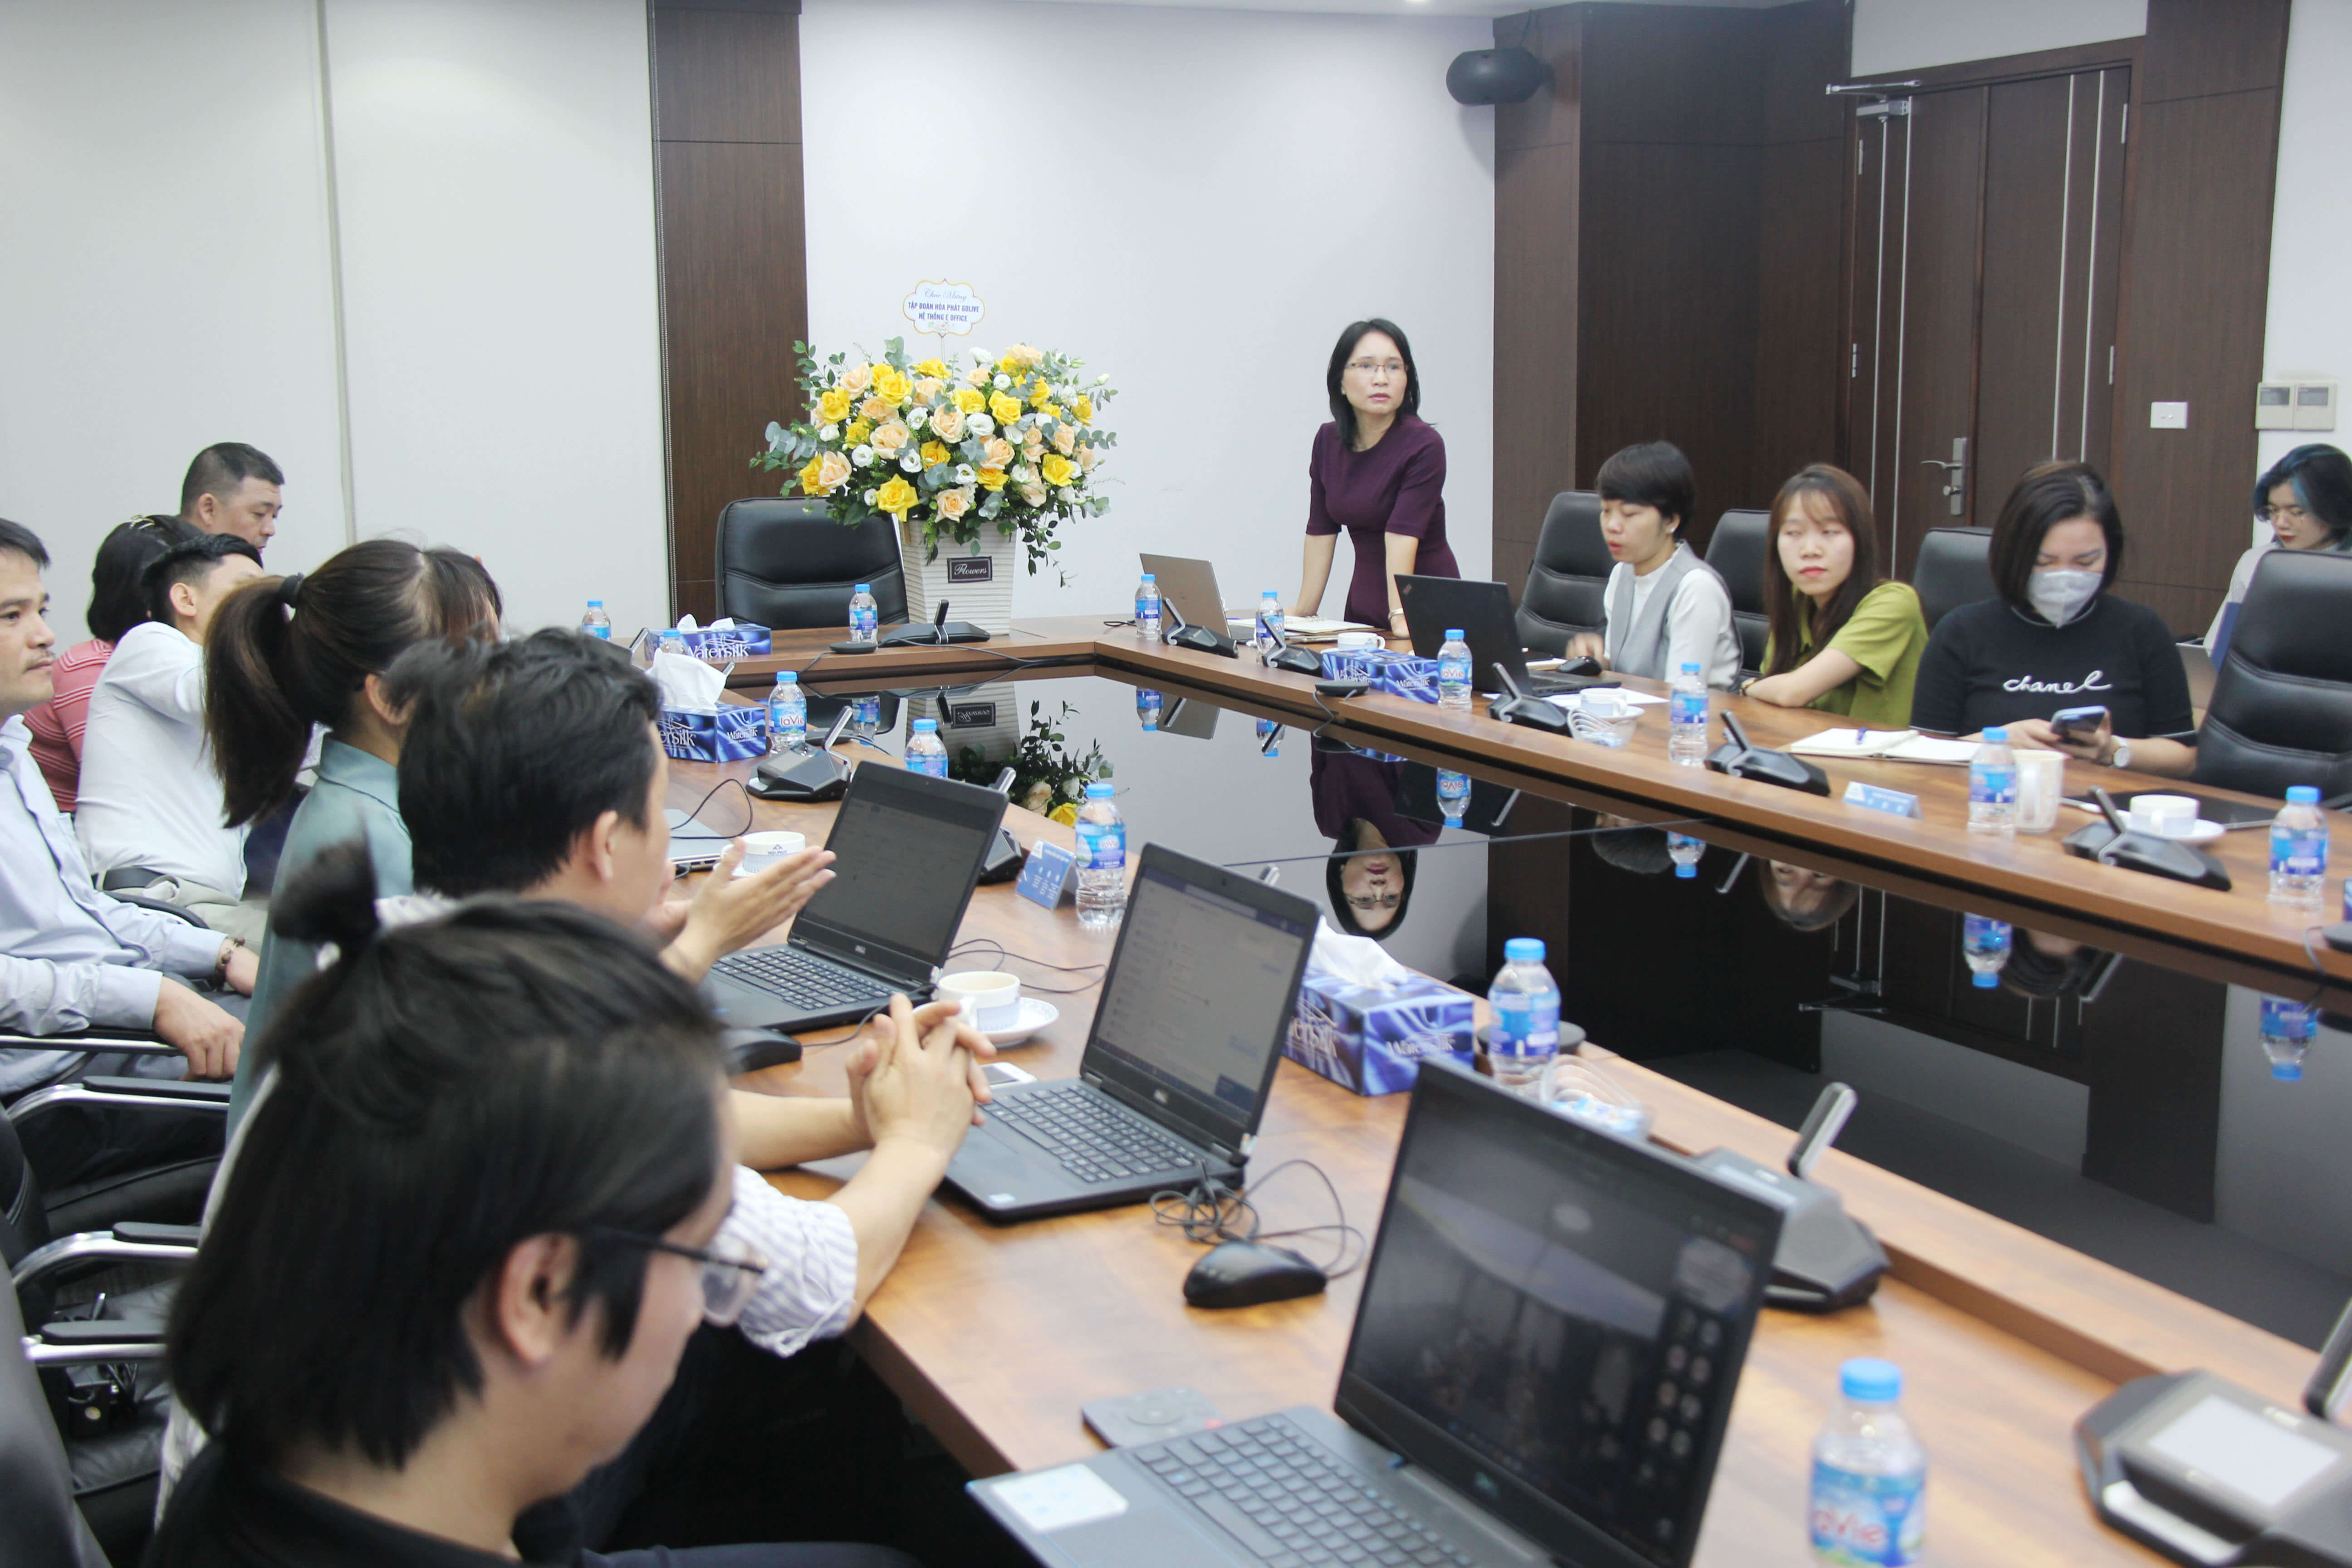 Tập đoàn Hòa Phát chính thức vận hành hệ thống văn phòng điện tử eOffice cùng Vũ Thảo